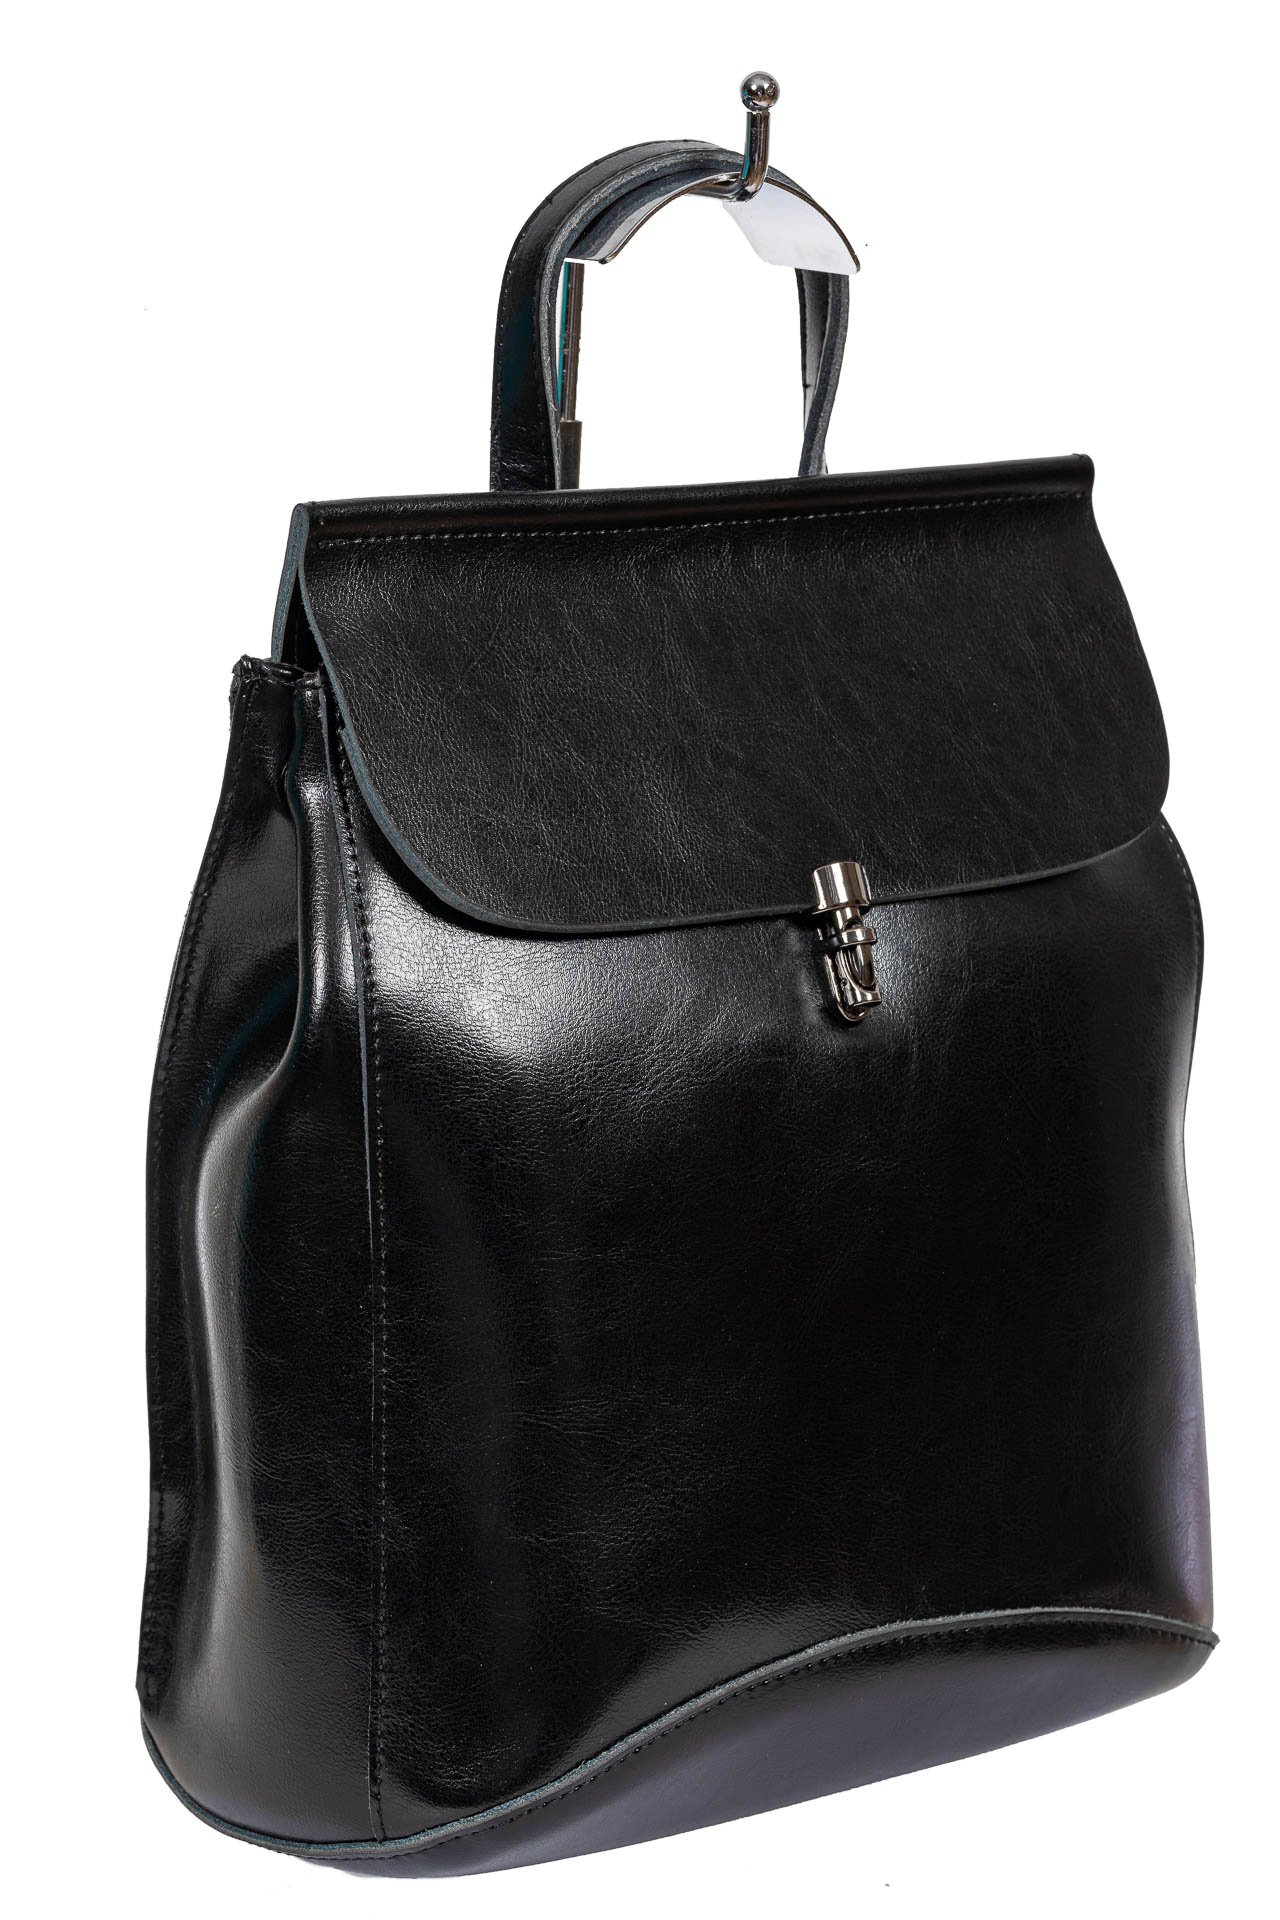 Женская сумка-рюкзак из натуральной кожи, цвет чёрный